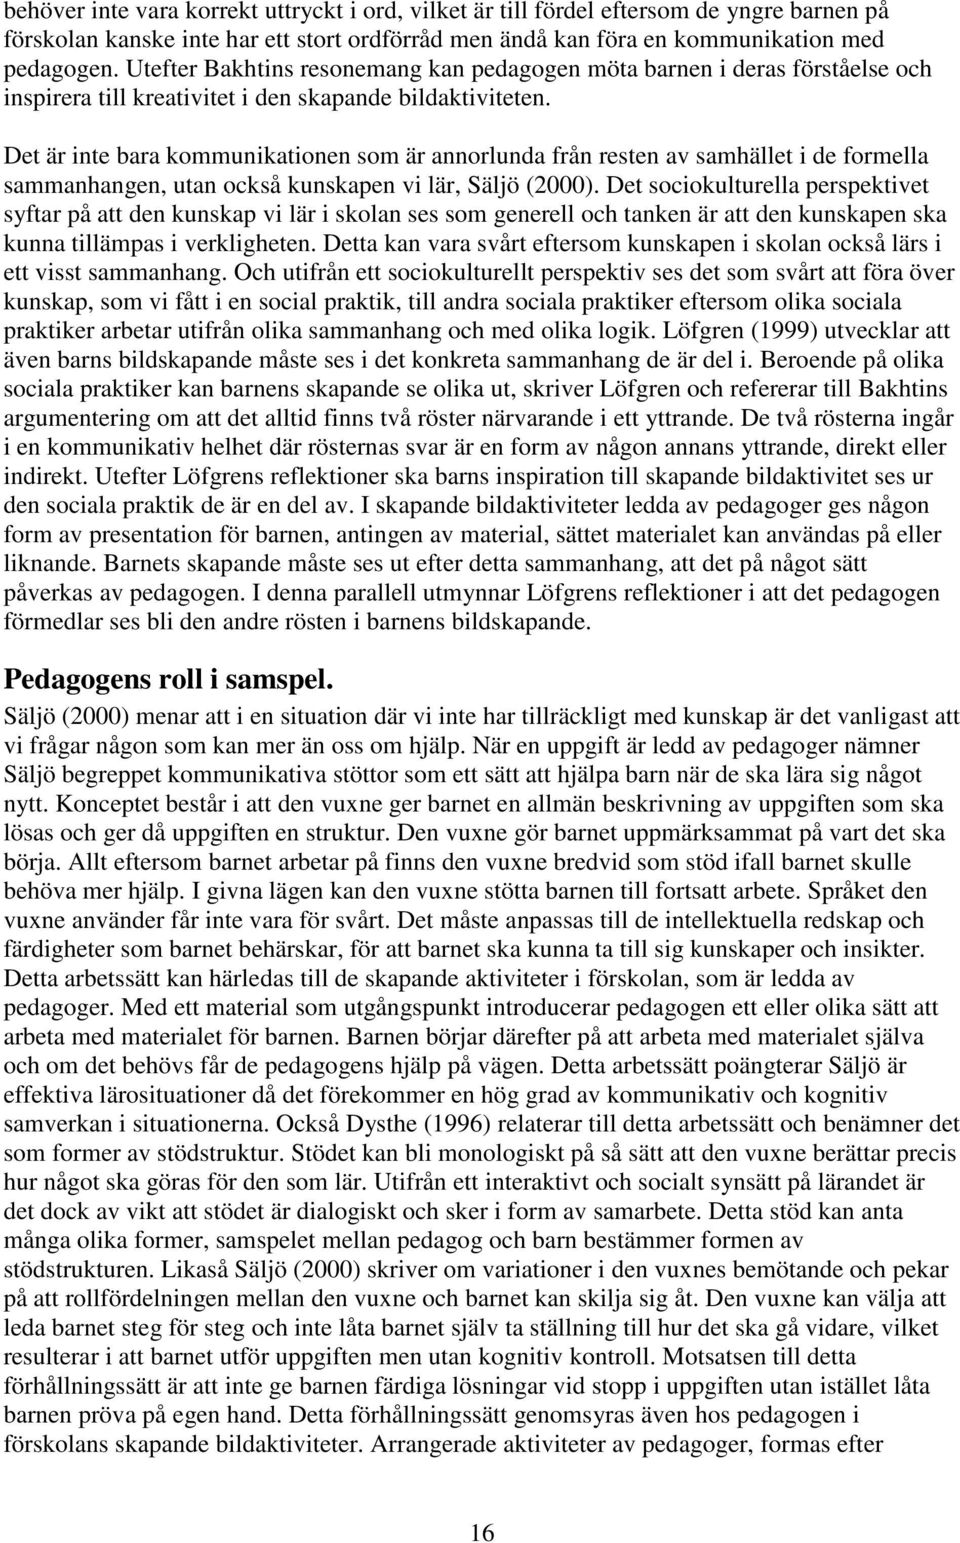 Det är inte bara kommunikationen som är annorlunda från resten av samhället i de formella sammanhangen, utan också kunskapen vi lär, Säljö (2000).